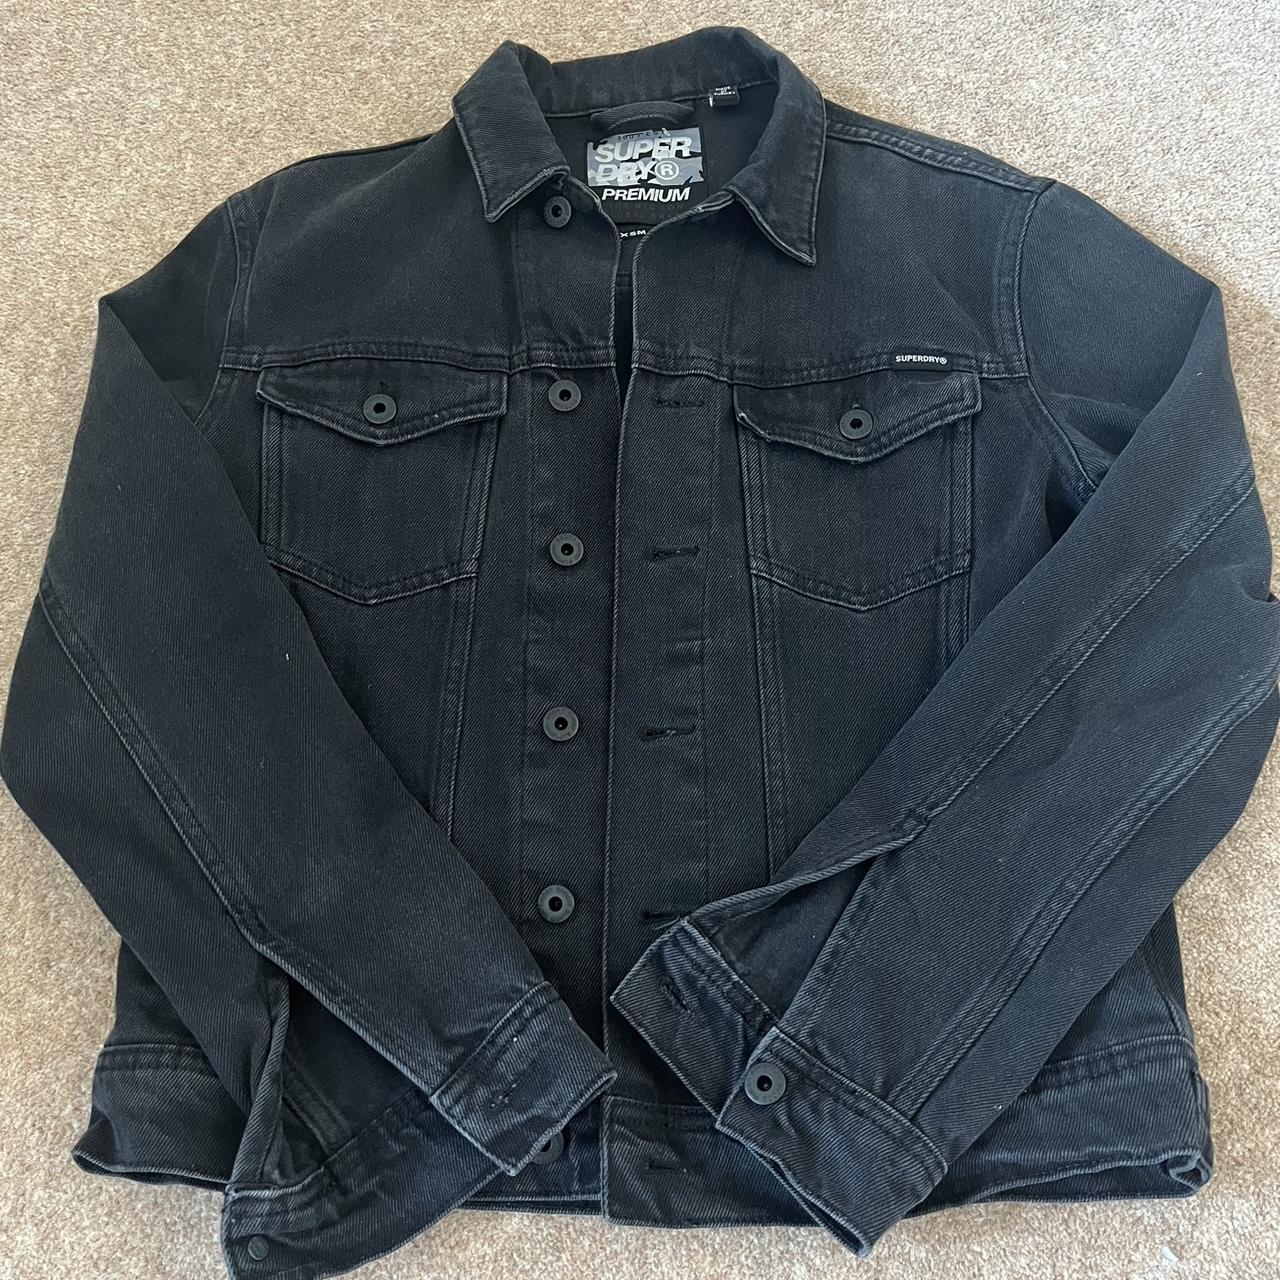 Super dry Black Denim Jacket Such a nice jacket RRP... - Depop